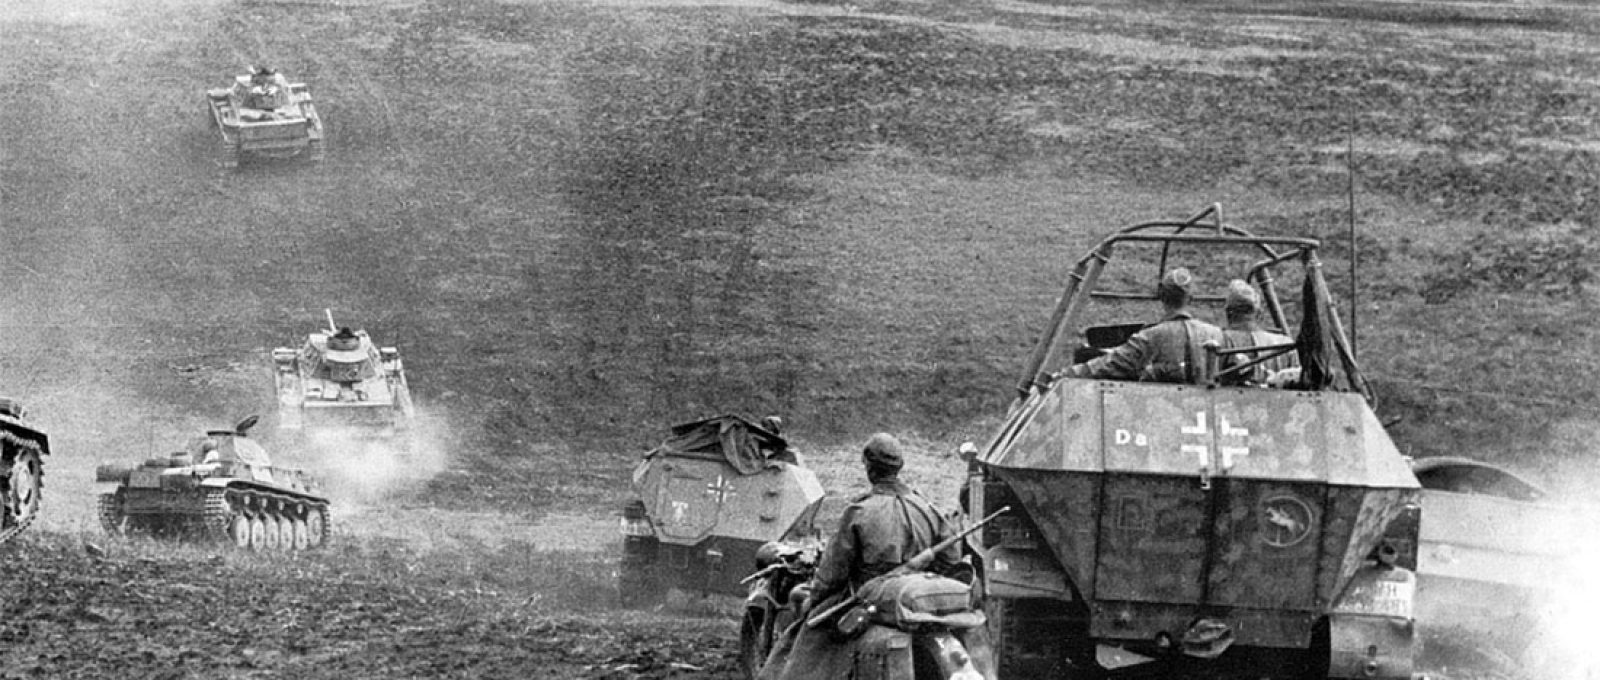 Elementos da 24ª Divisão Panzer da Wehrmacht avançam em direção a Stalingrado em agosto de 1942 (Wikimedia Commons).